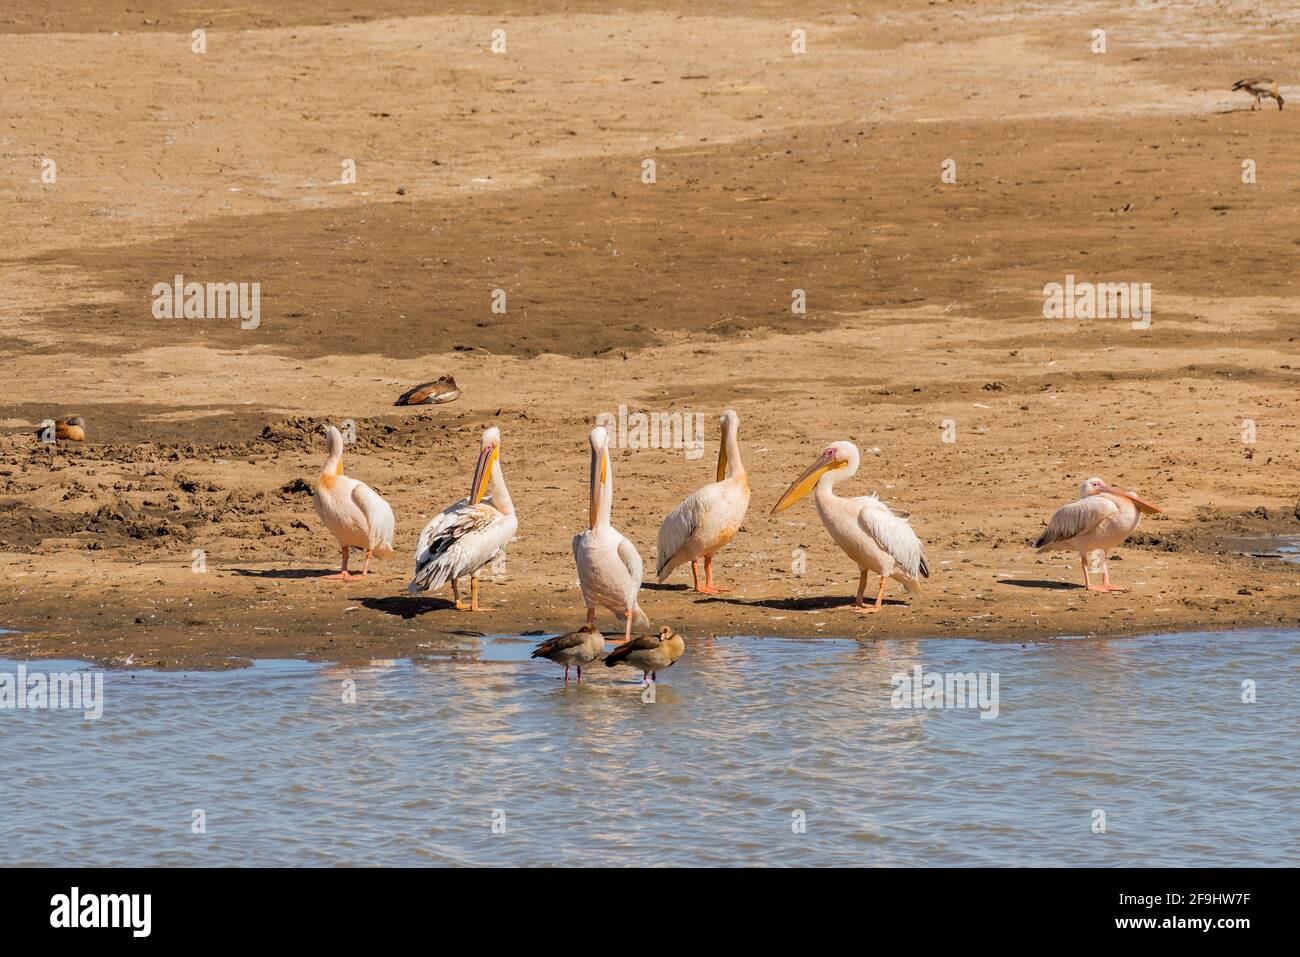 Wild white pelicans on a sandbar, Namibia Stock Photo